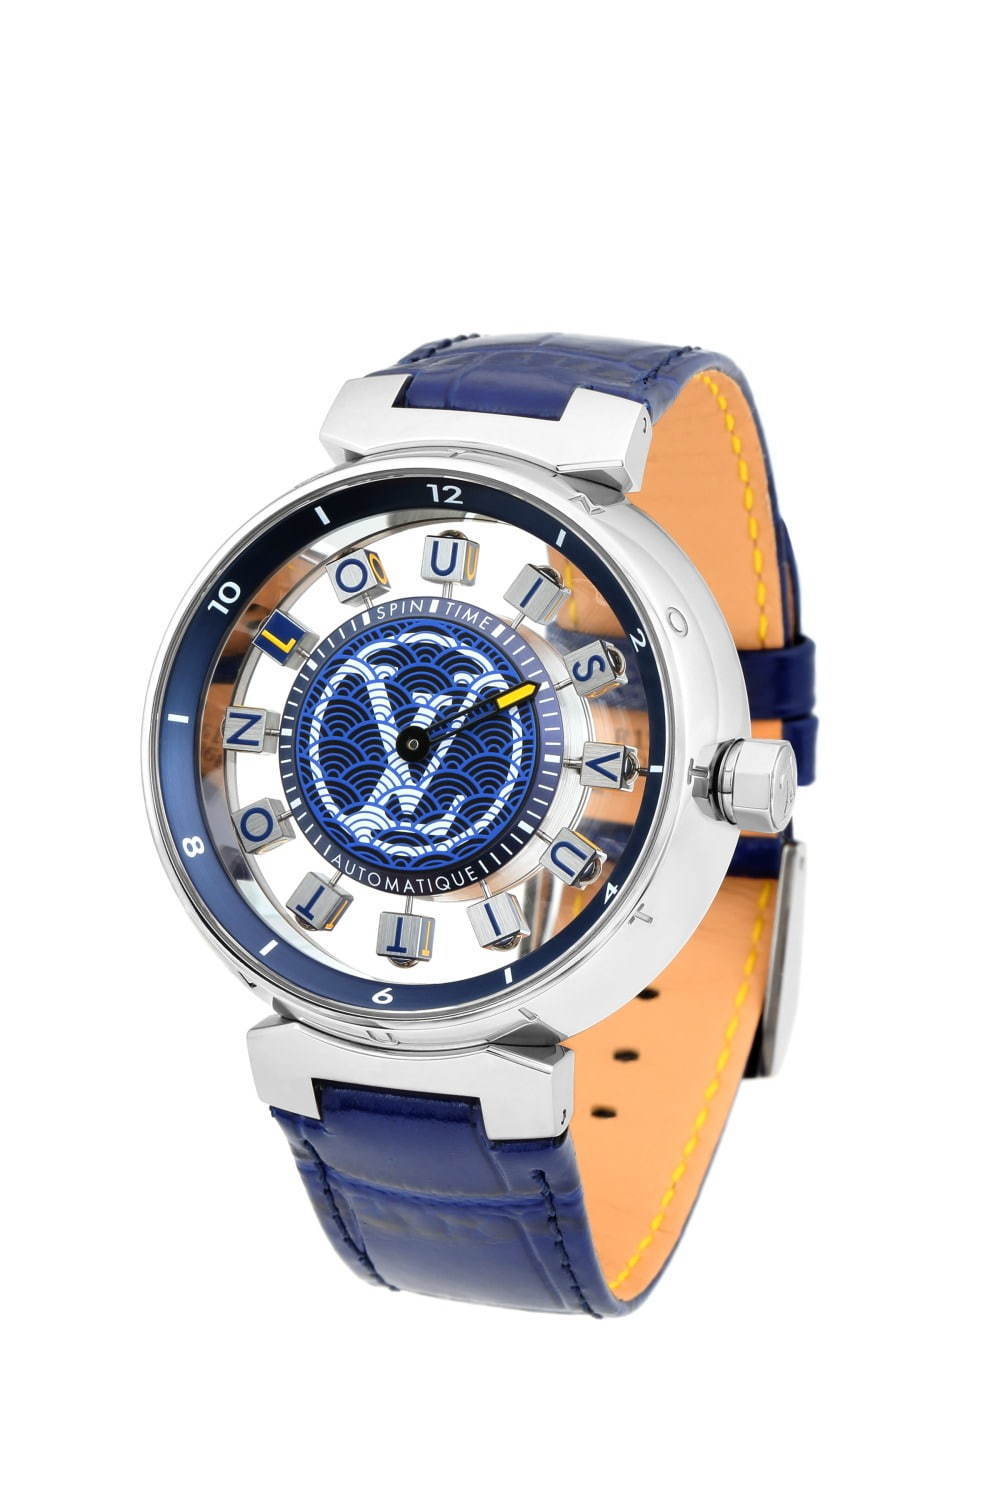 ルイ・ヴィトン “回転キューブが時を示す”腕時計に限定モデル、日本の